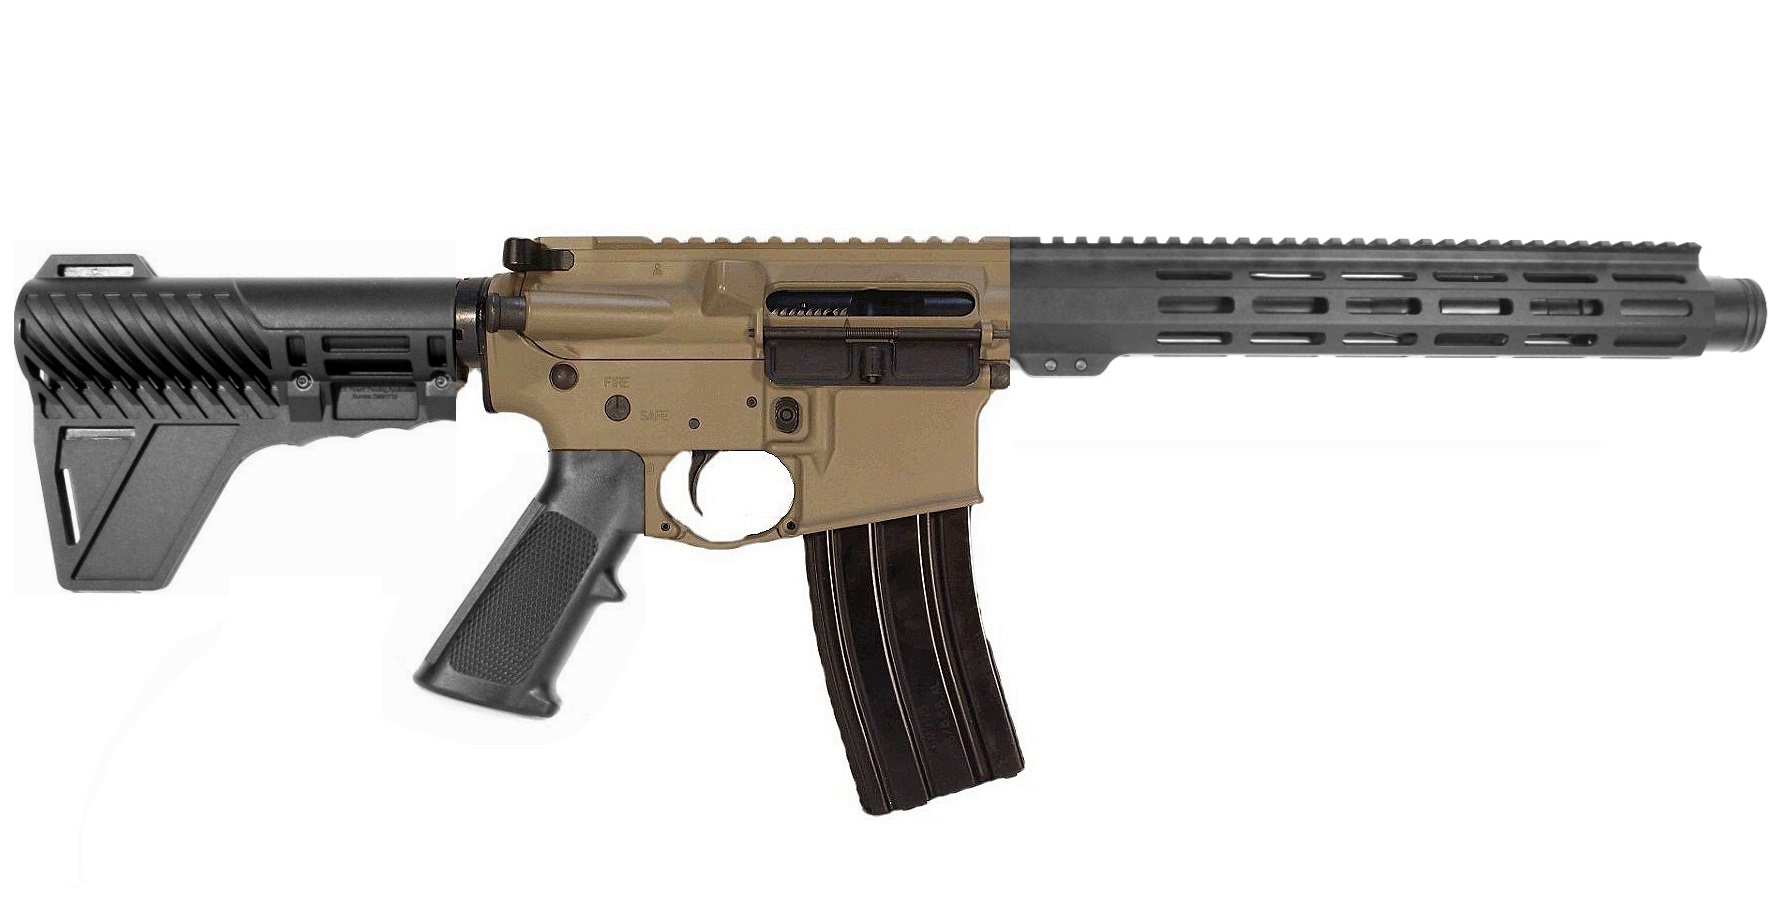 10.5 inch 450 Bushmaster AR Pistol - USA MADE